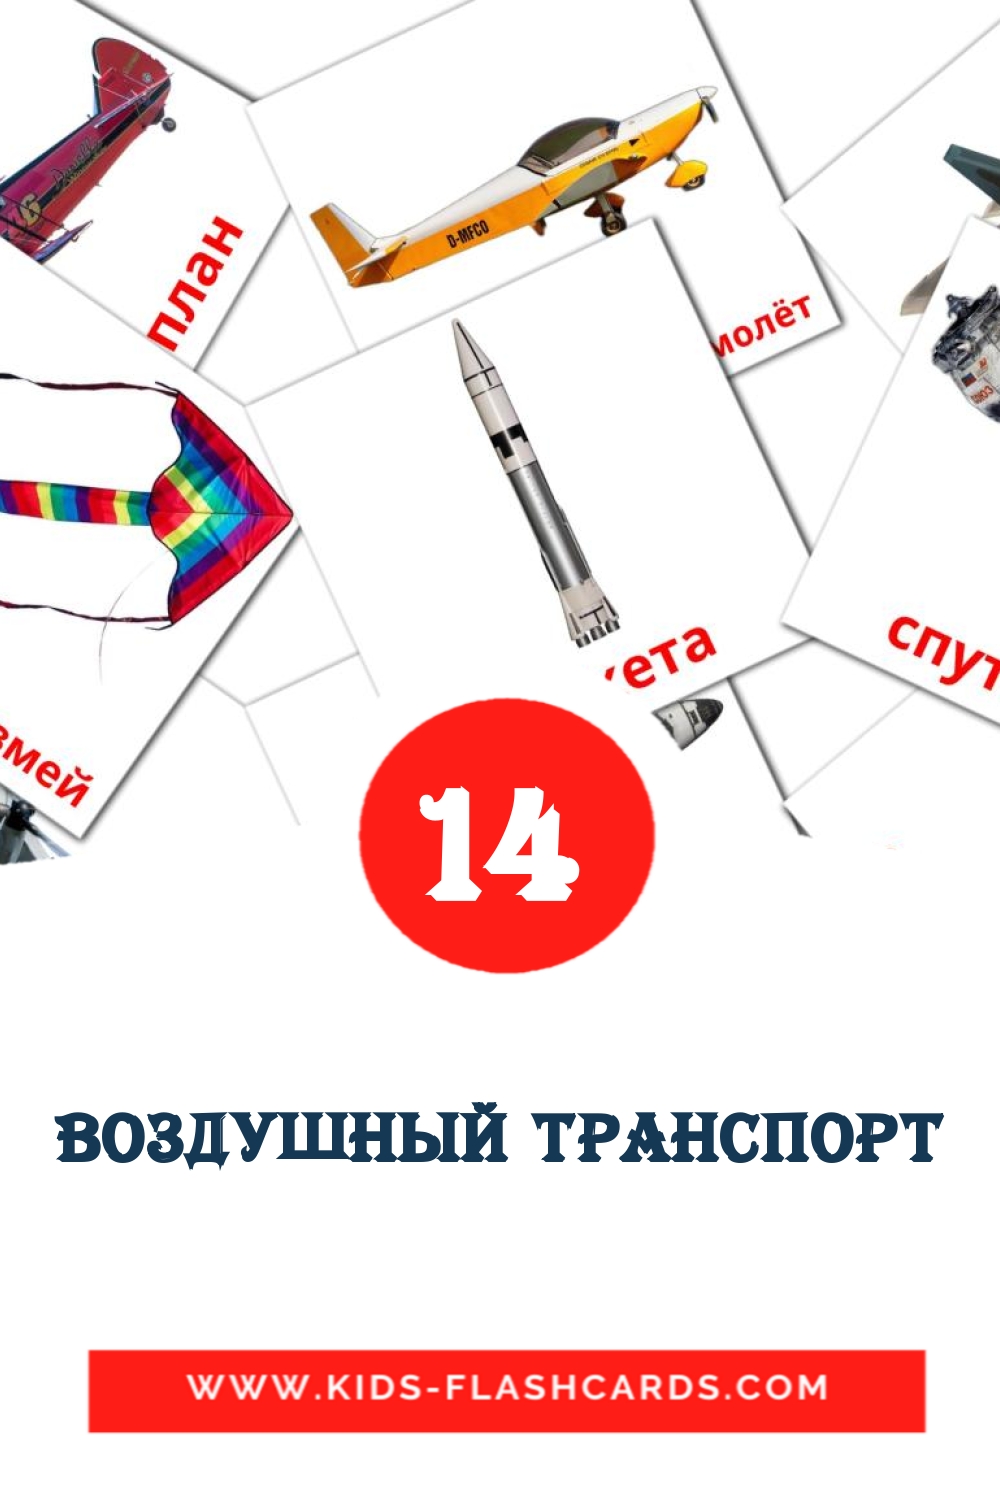 14 carte illustrate di Воздушный транспорт per la scuola materna in russo